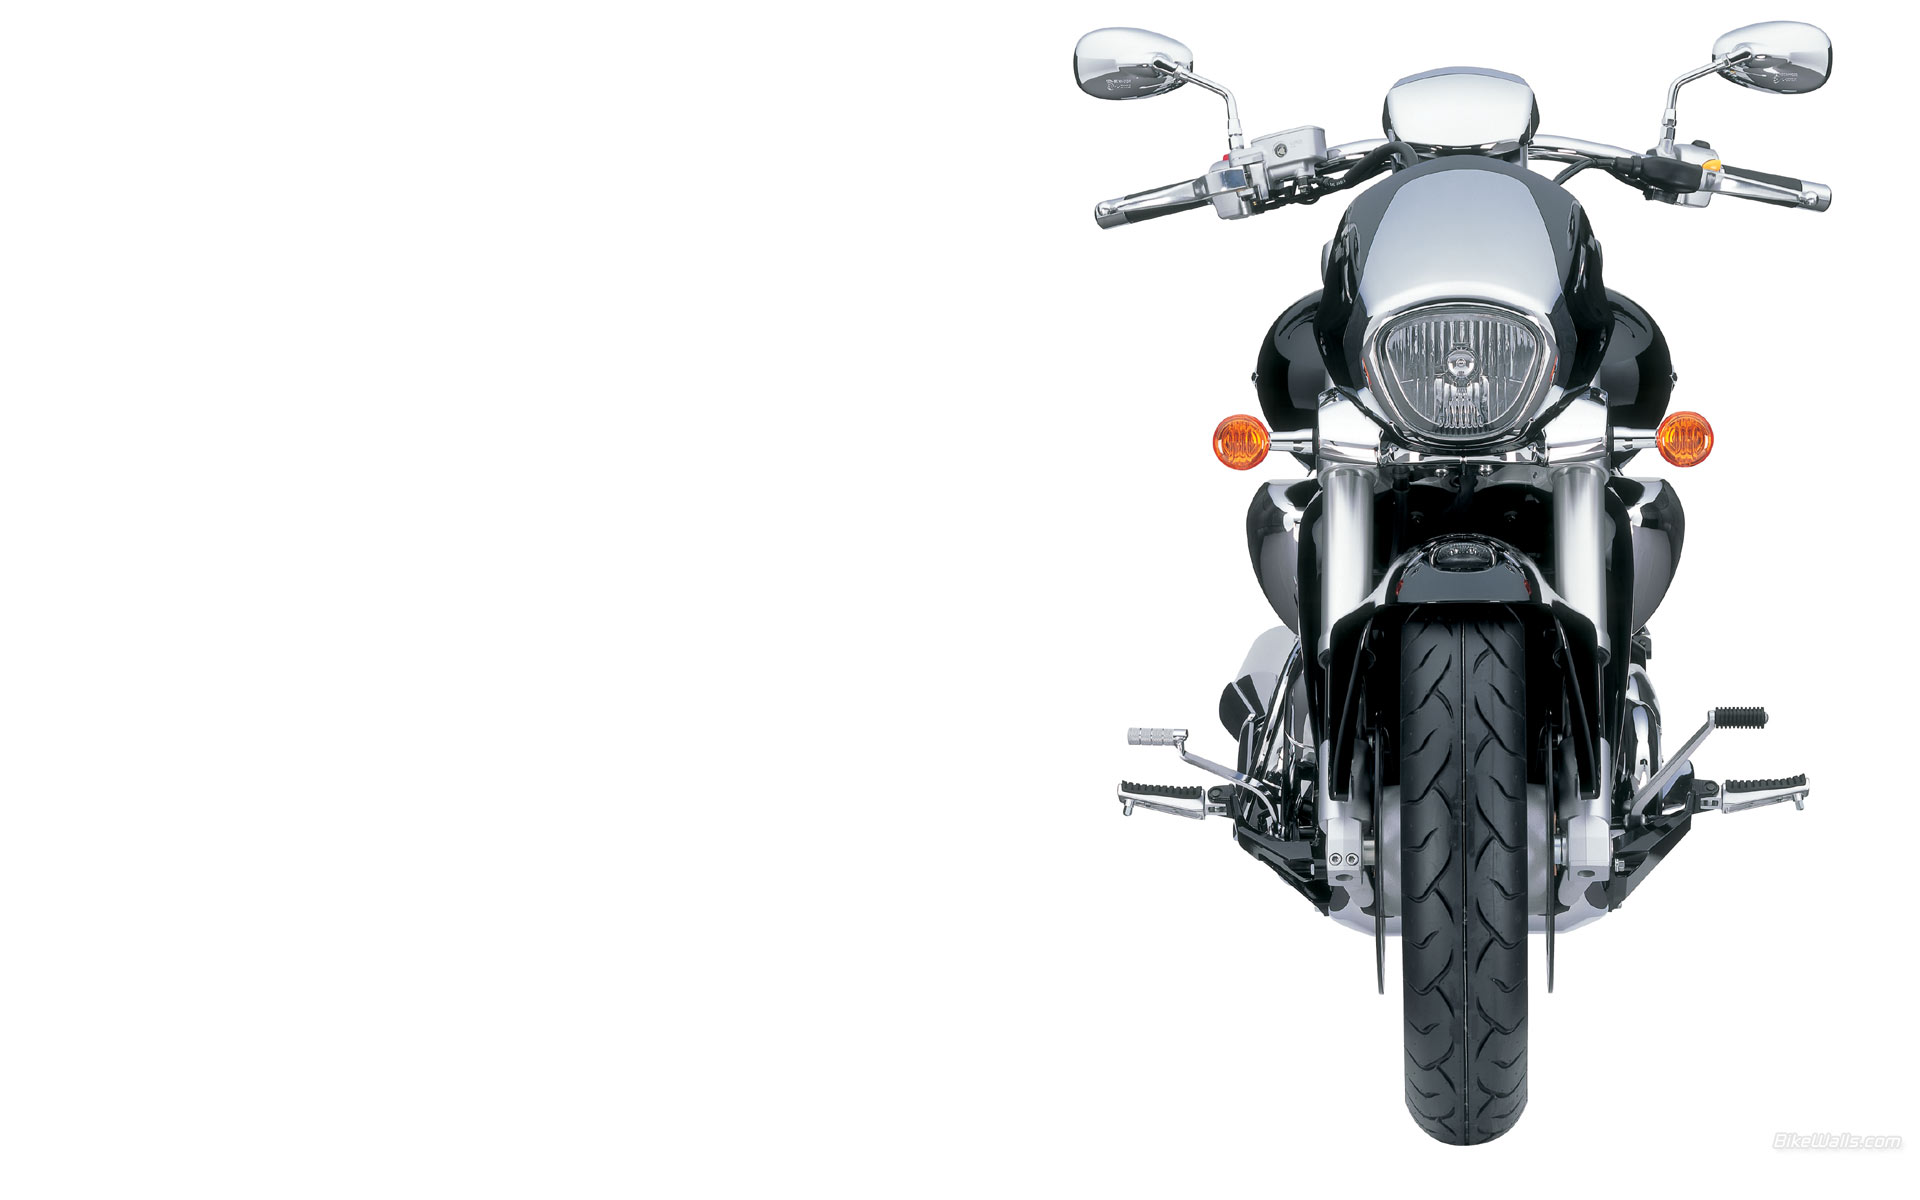 Мотоцикл Suzuki Intruder (Сузуки Интрудер) M 1800 R — безусловный лидер в категории круизеров